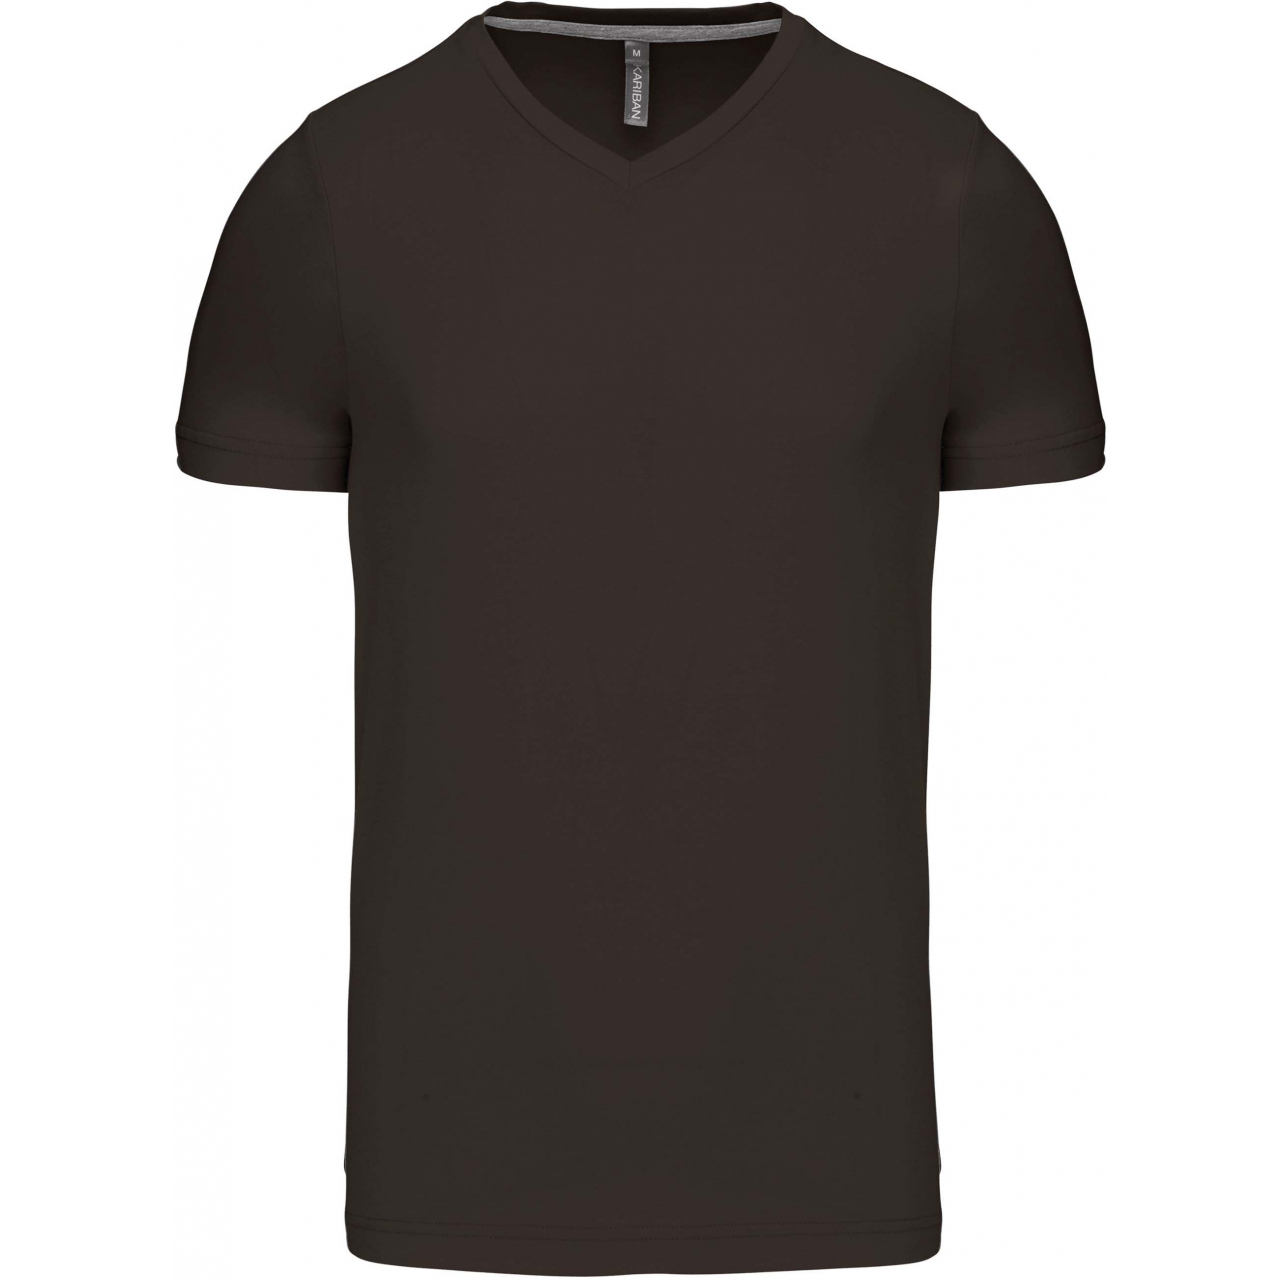 Pánské tričko Kariban krátký rukáv V-neck - tmavé khaki, S